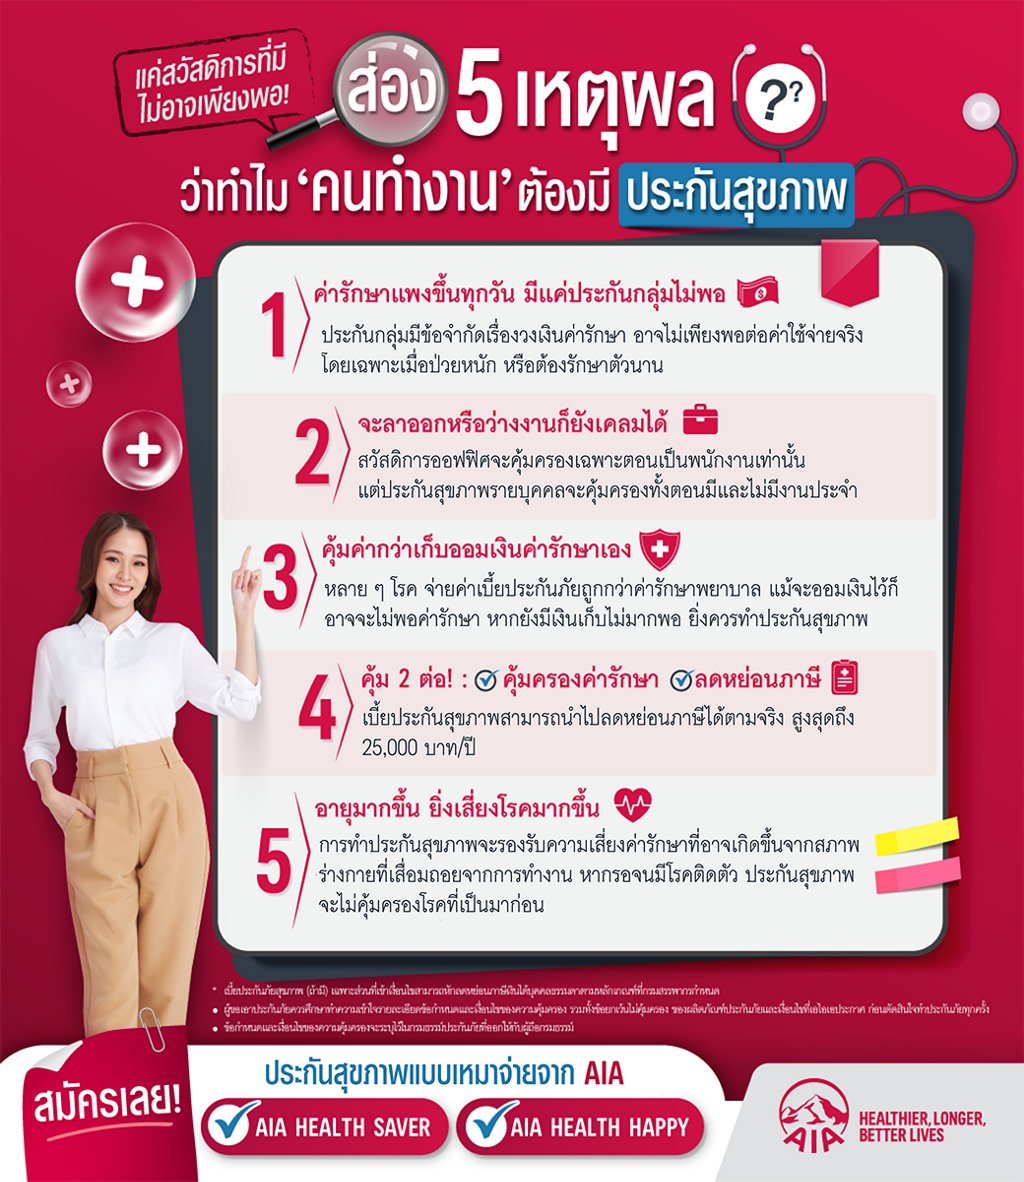 ส่อง 5 เหตุผล ที่ “คนทำงาน” ต้องมีประกันสุขภาพ | Aia Thailand